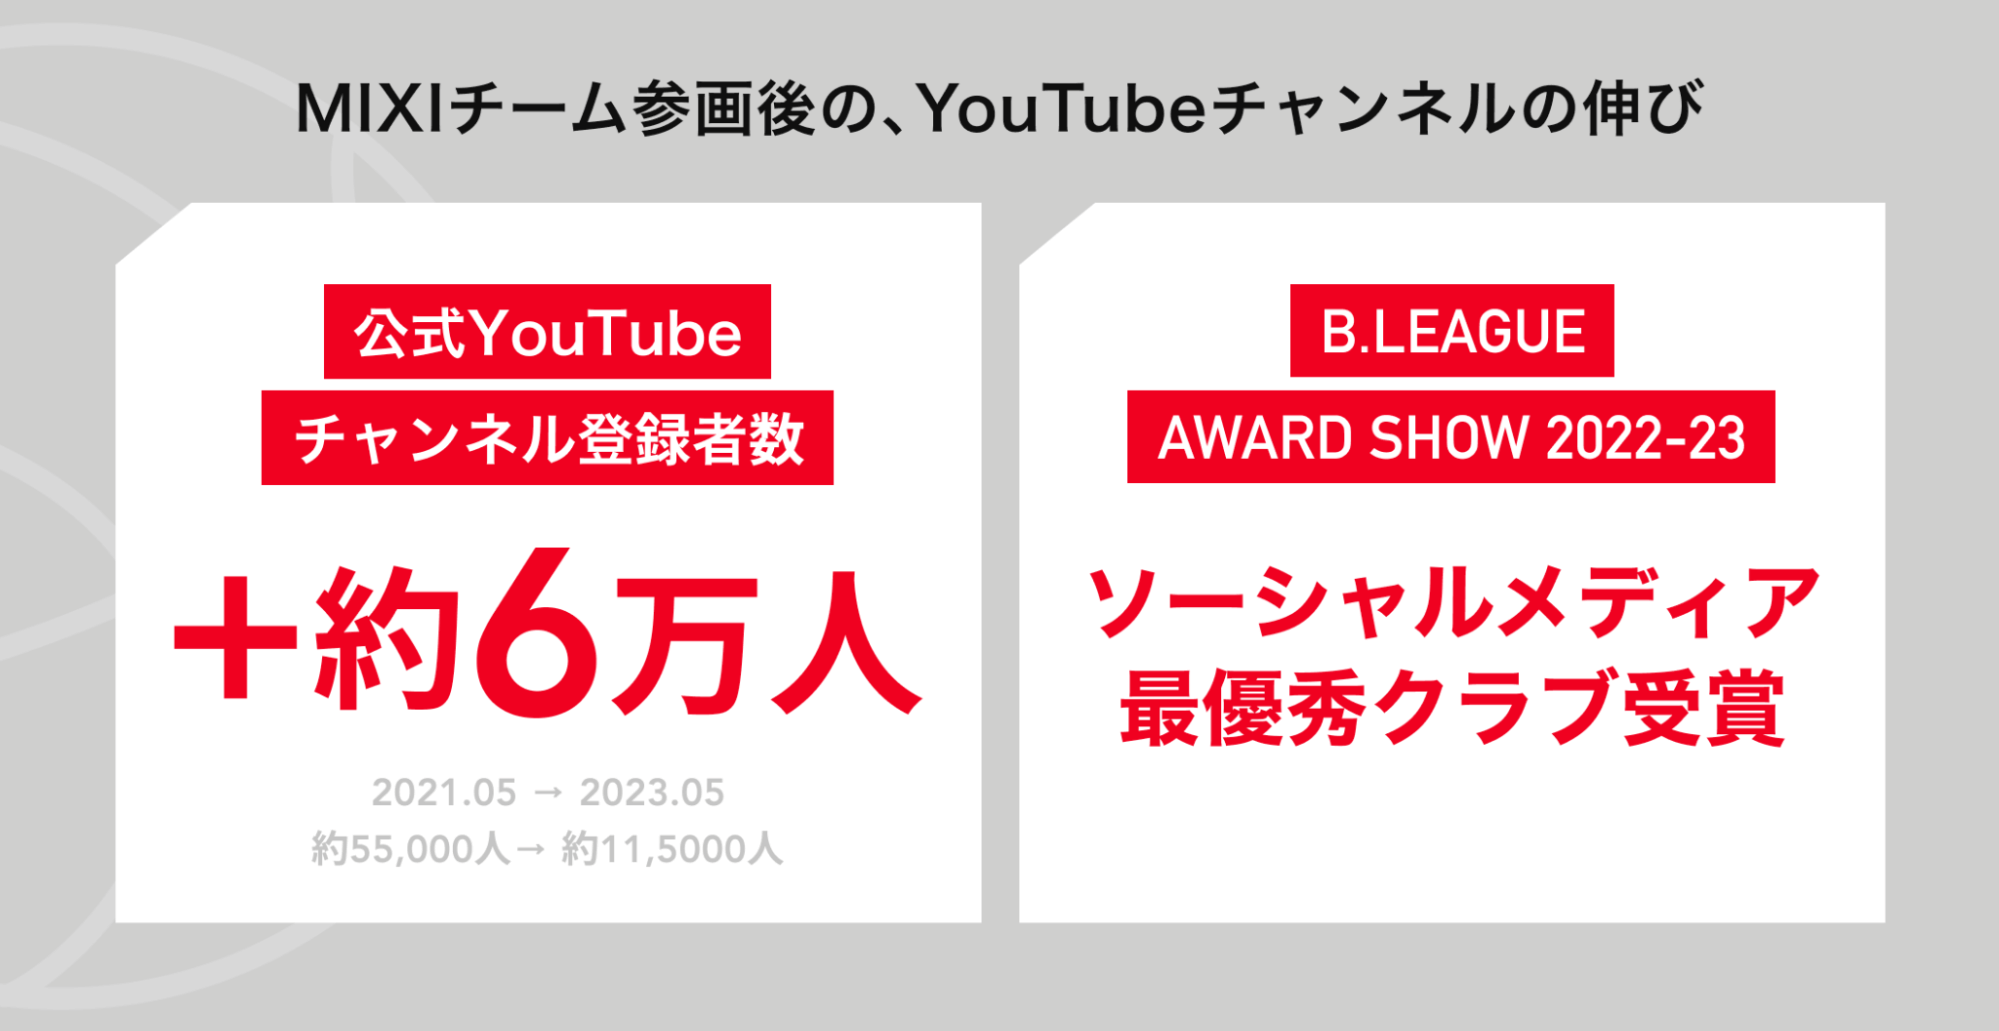 公式YouTubeチャンネル登録者数は＋6万人(2021年5月から2023年5月)であること、B.LEAGUE AWARD SHOW 2022-23にてソーシャルメディア最優秀クラブを受賞したことが画像で示されている。